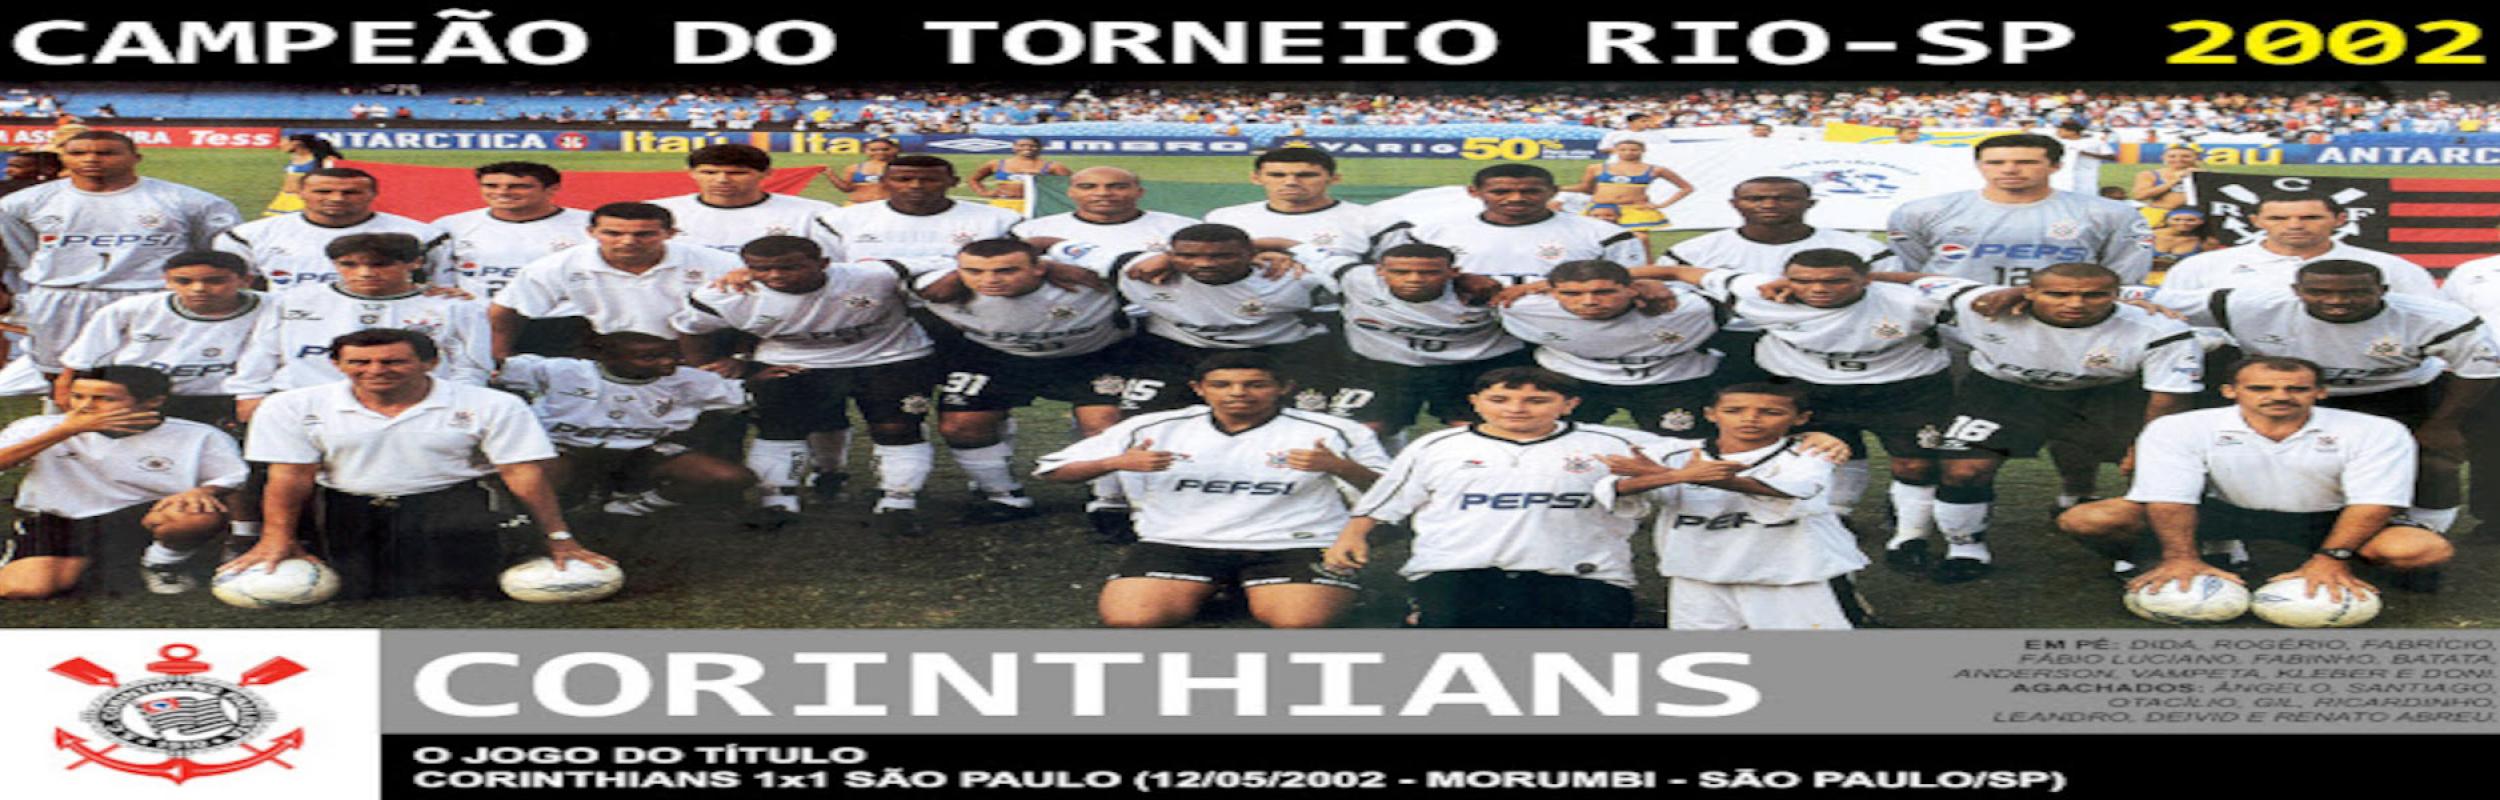 Torneio Rio-São Paulo 2002